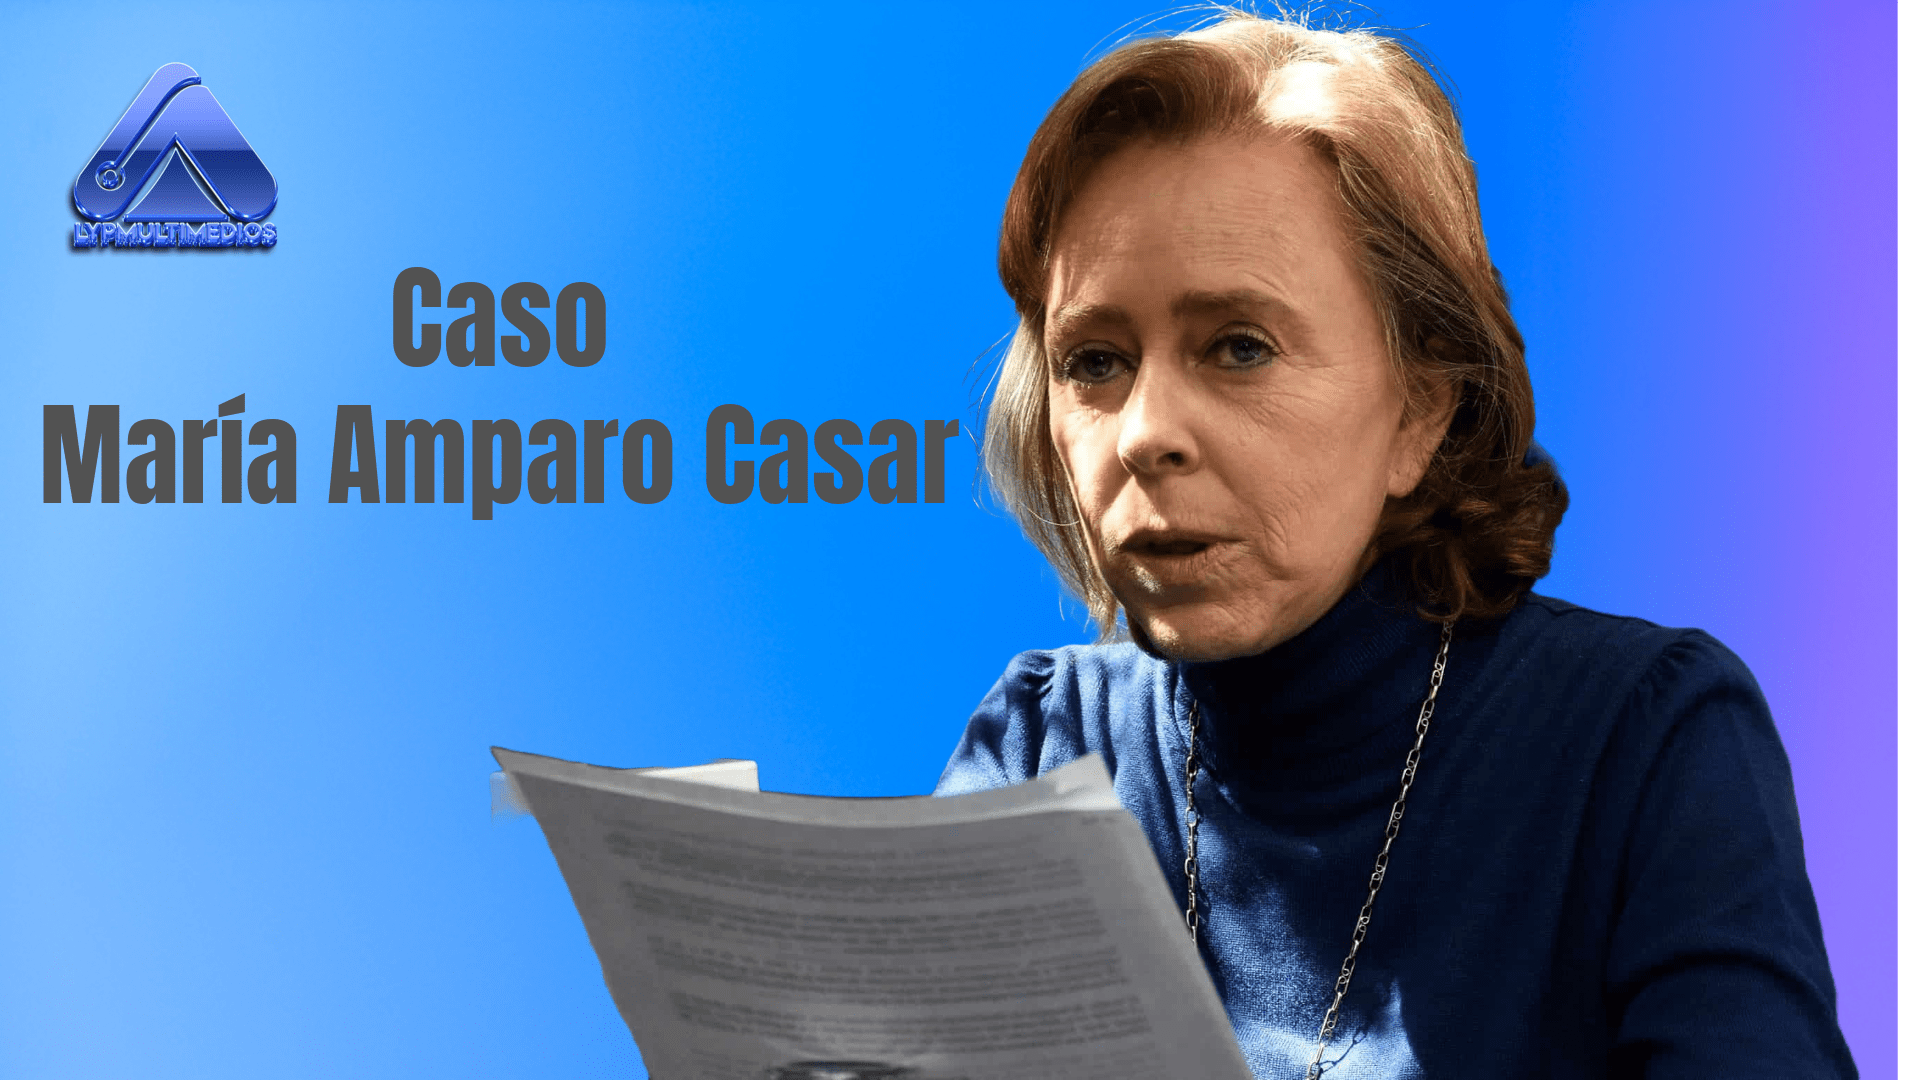 Muerte, Dinero y Dudas: El Escándalo de Pemex y la Controversia en Torno a la Pensión Millonaria de María Amparo Casar